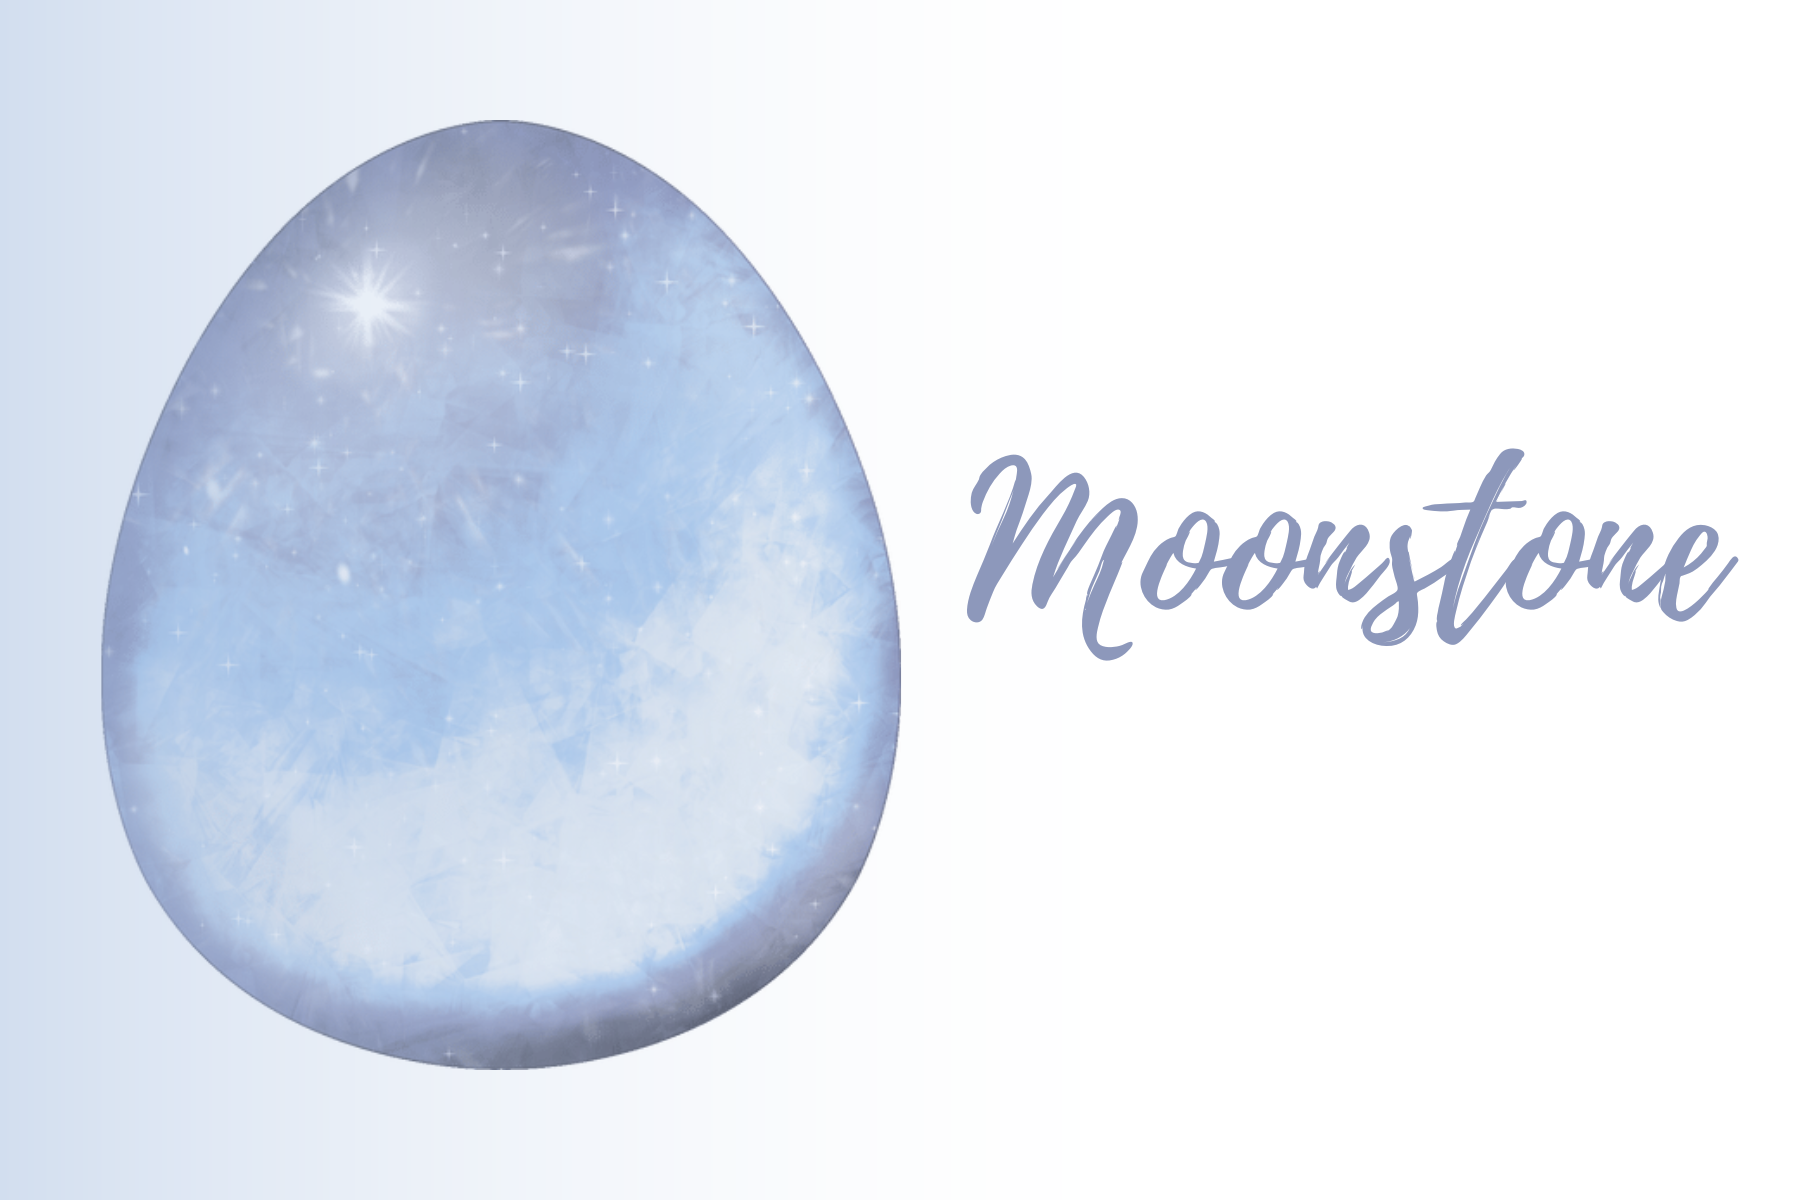 An egg-shaped moonstone